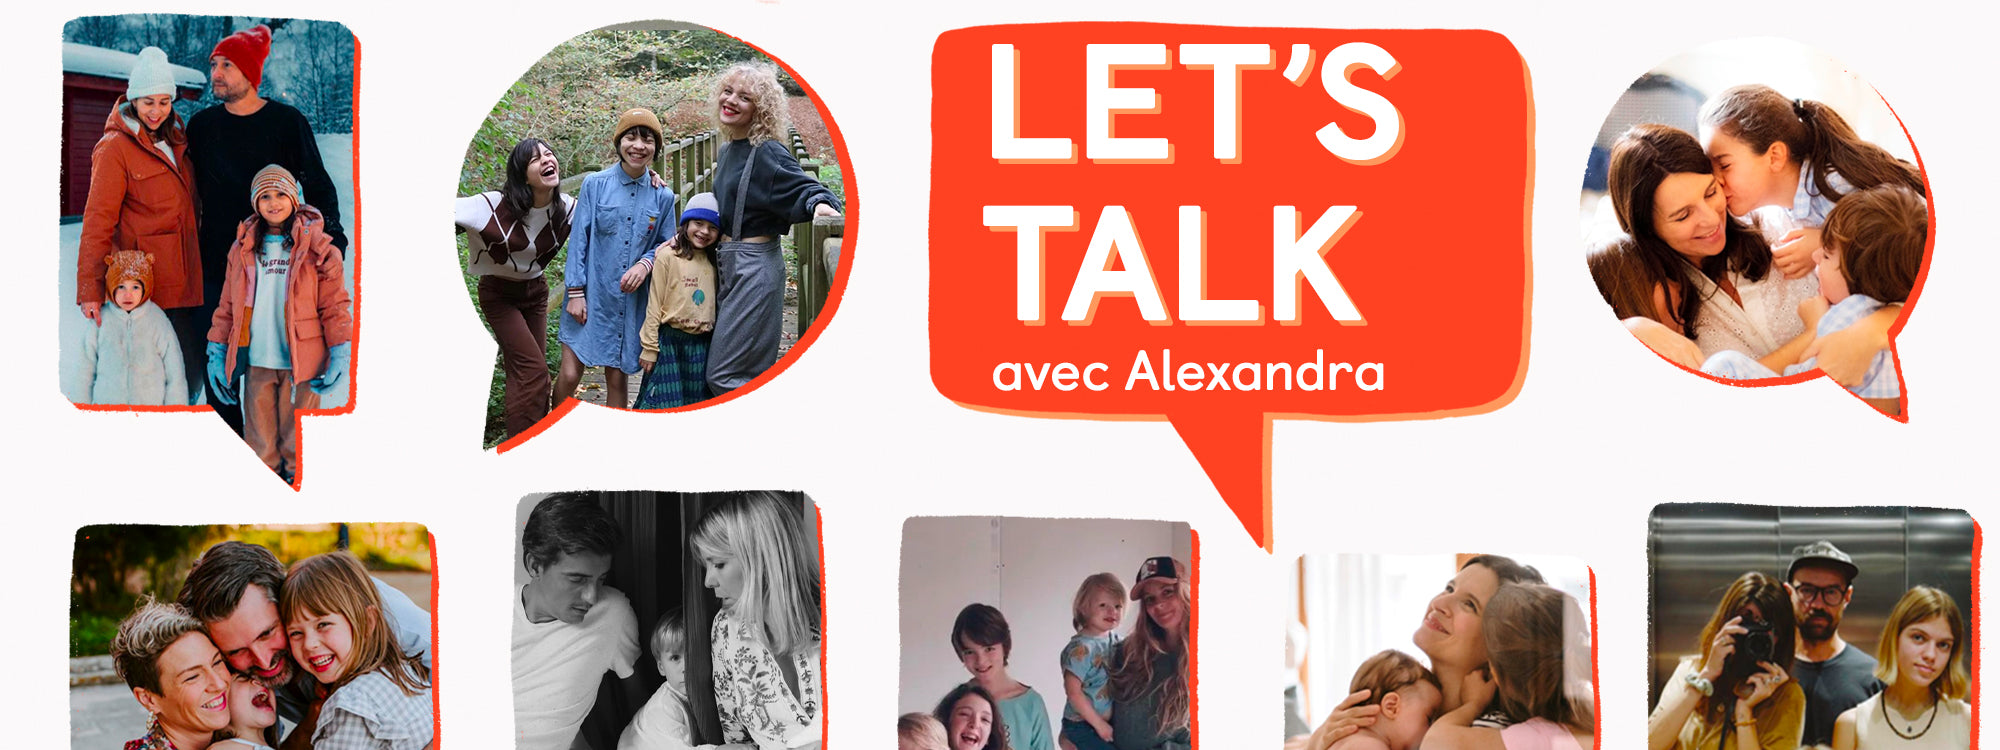 Let's Talk avec Alexandra